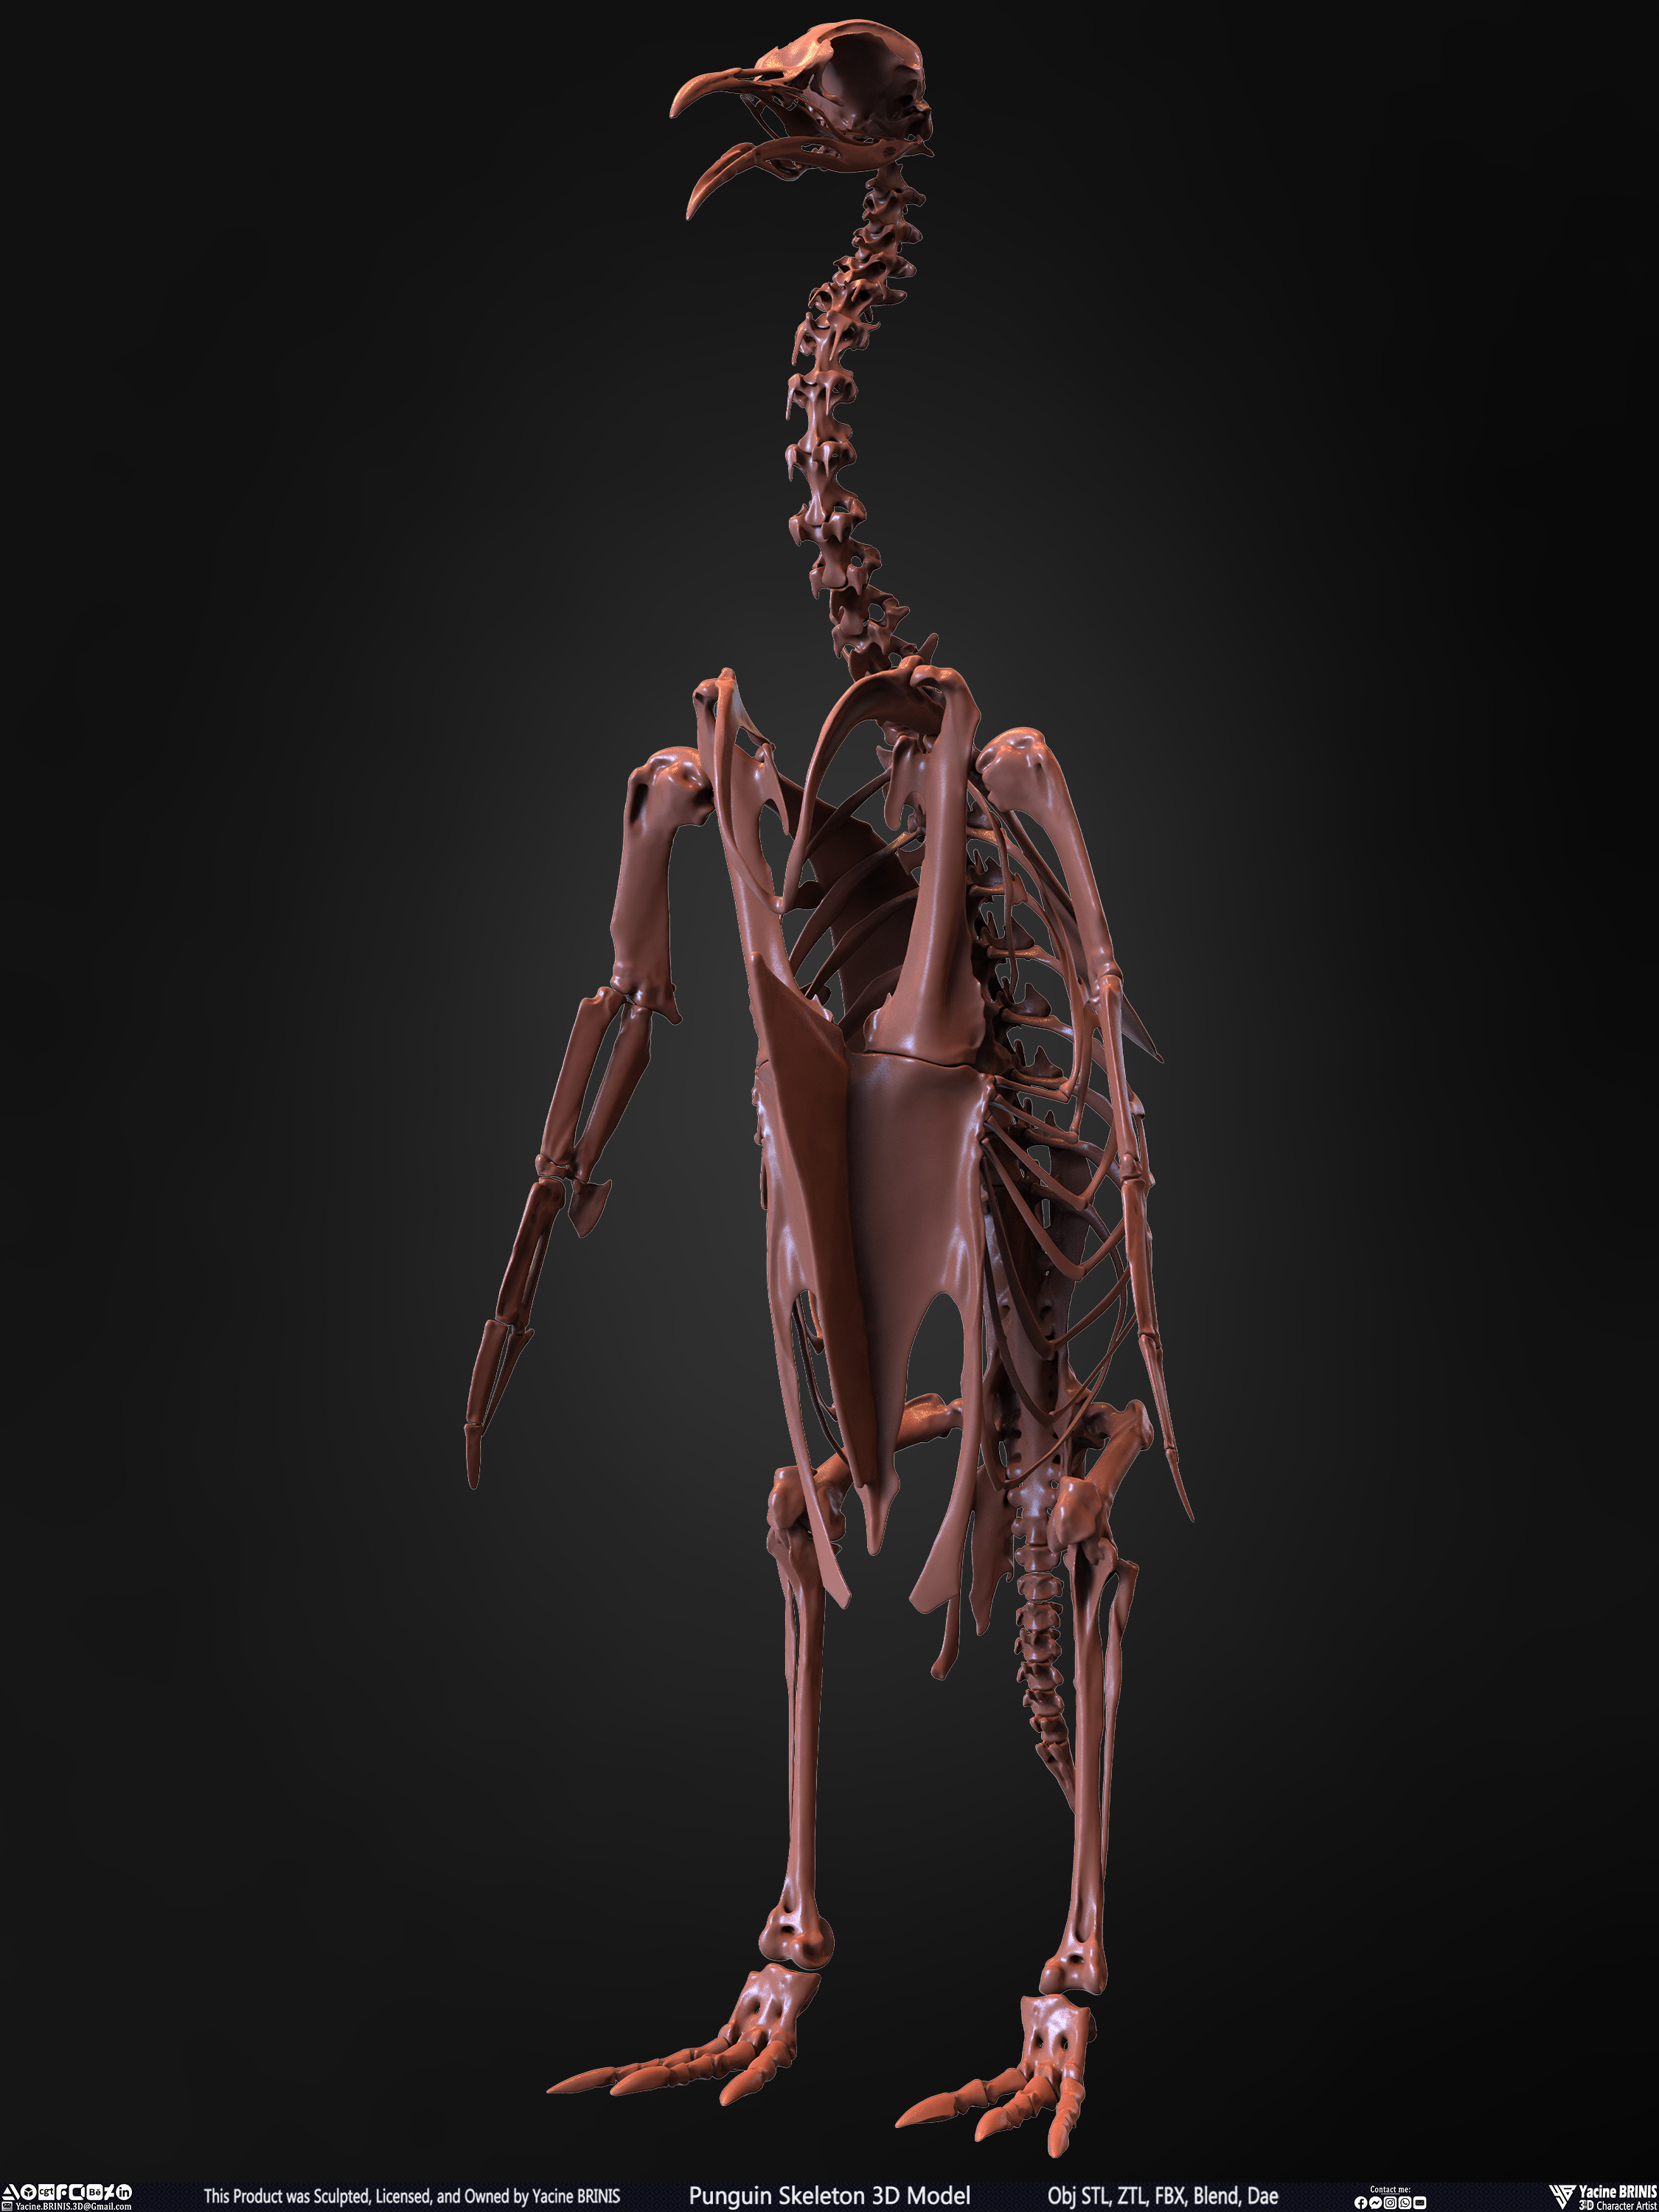 Penguin Skeleton 3D Model Sculpted by Yacine BRINIS Set 007